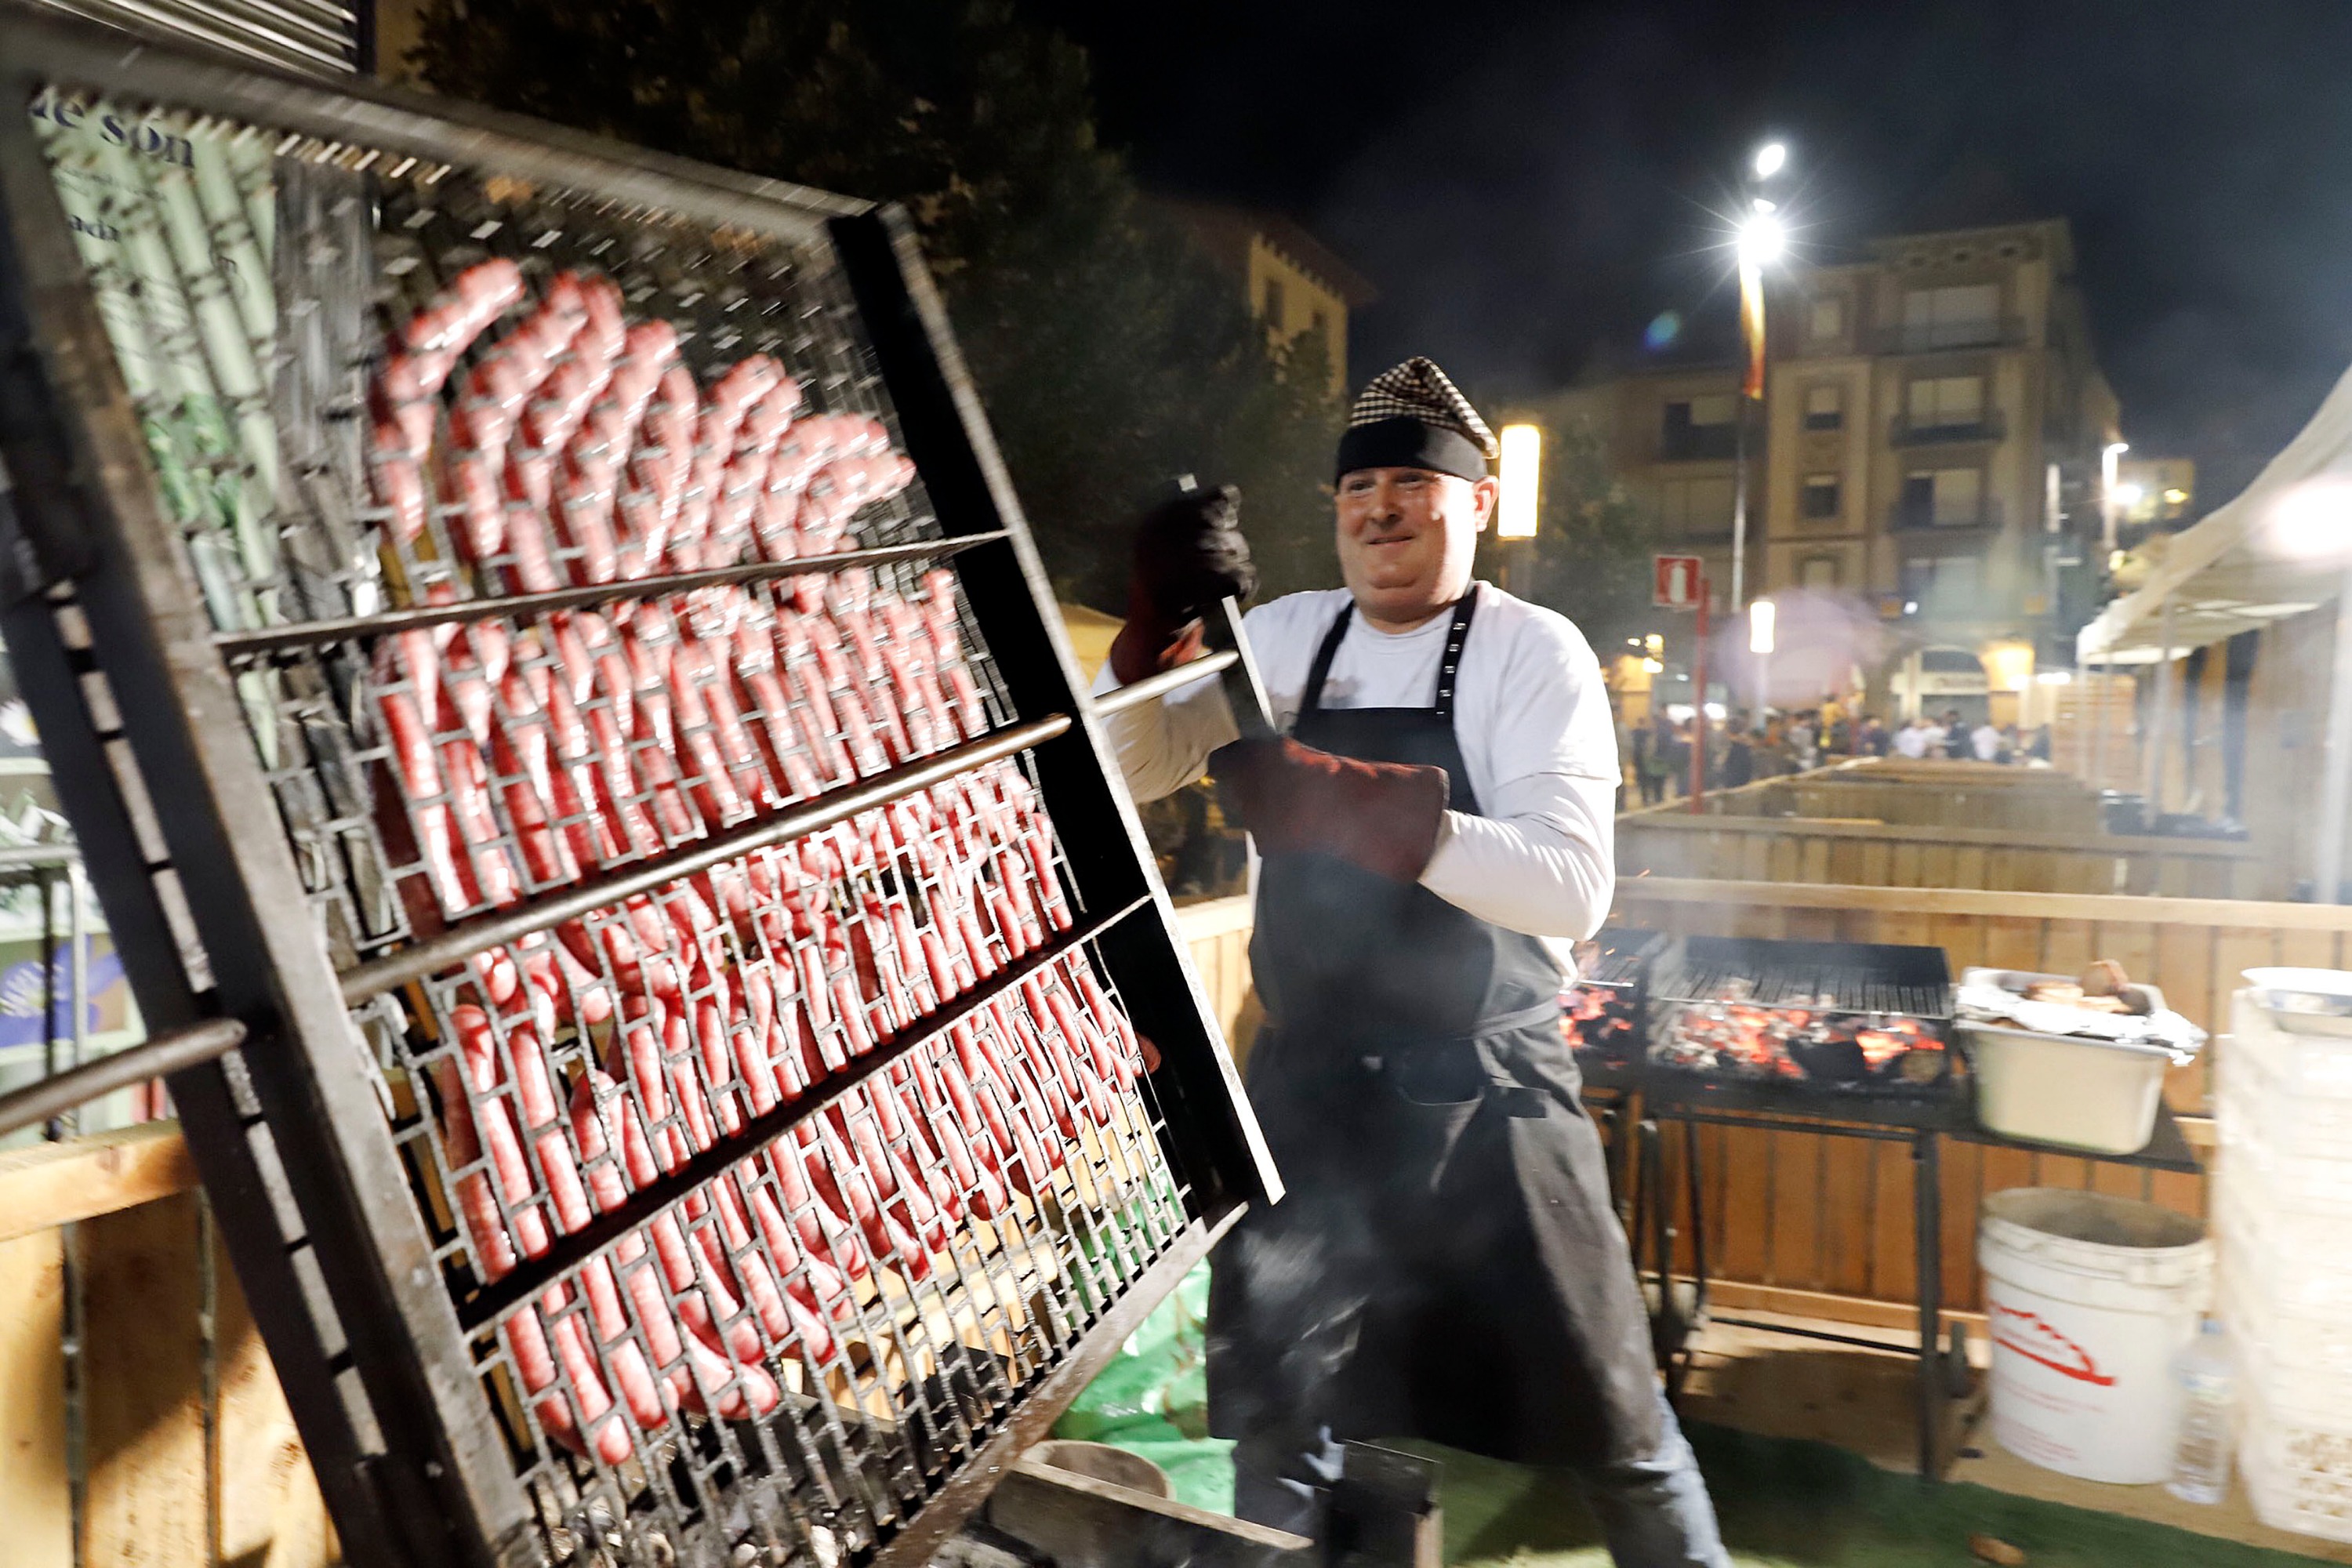 Els cansaladers del Mercat Municipal es van encarregar dissabte de rostir un porc durant tot el dia i coure altres productes per al sopar dels assistents